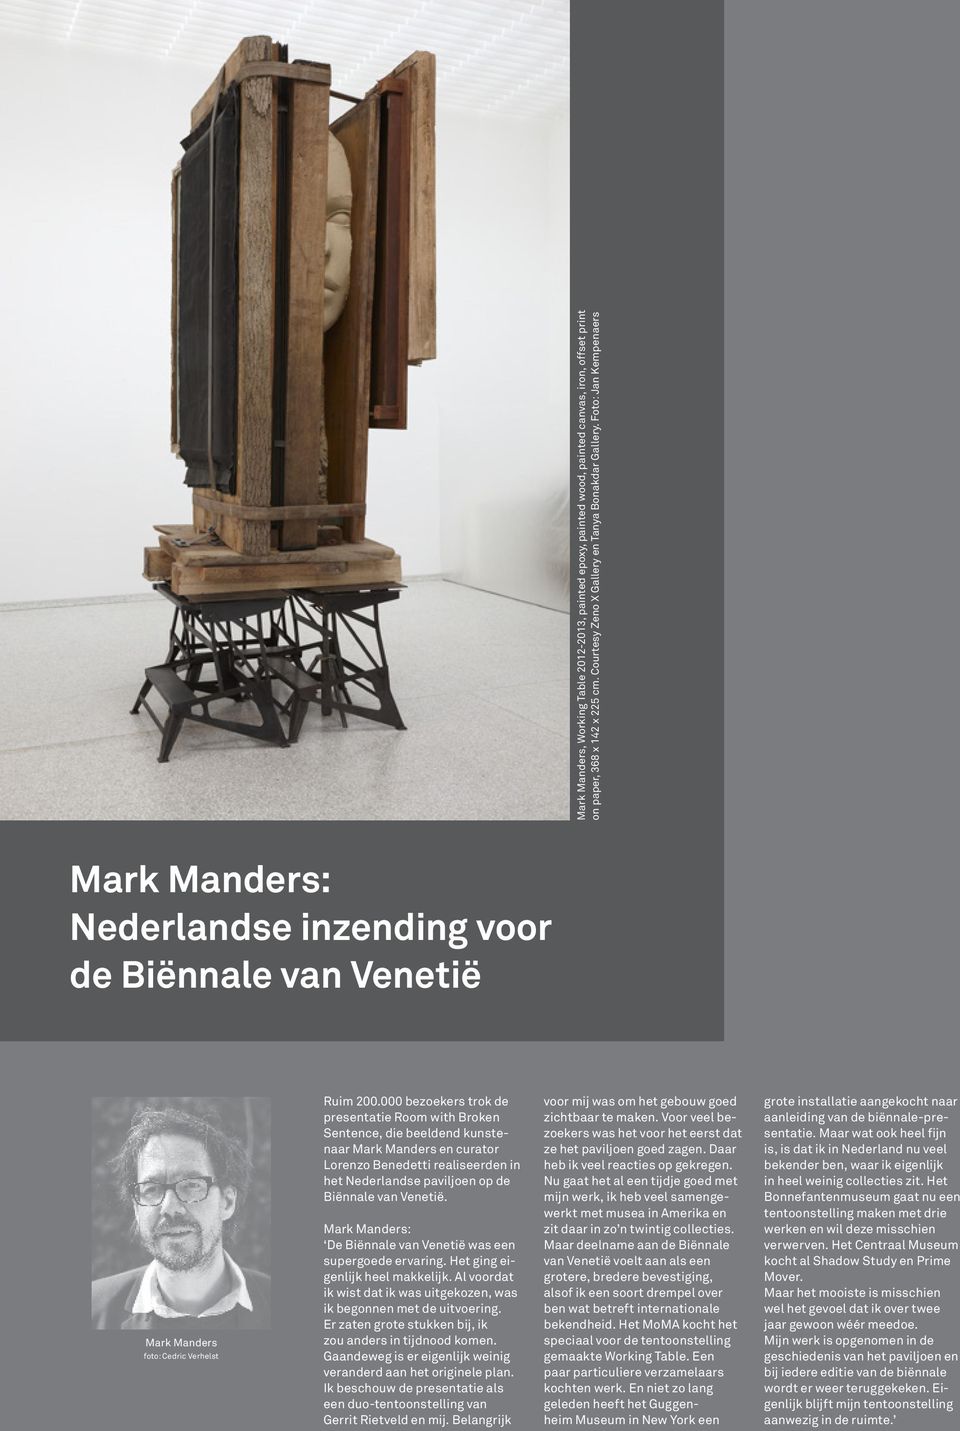 000 bezoekers trok de presentatie Room with Broken Sentence, die beeldend kunstenaar Mark Manders en curator Lorenzo Benedetti realiseerden in het Nederlandse paviljoen op de Biënnale van Venetië.